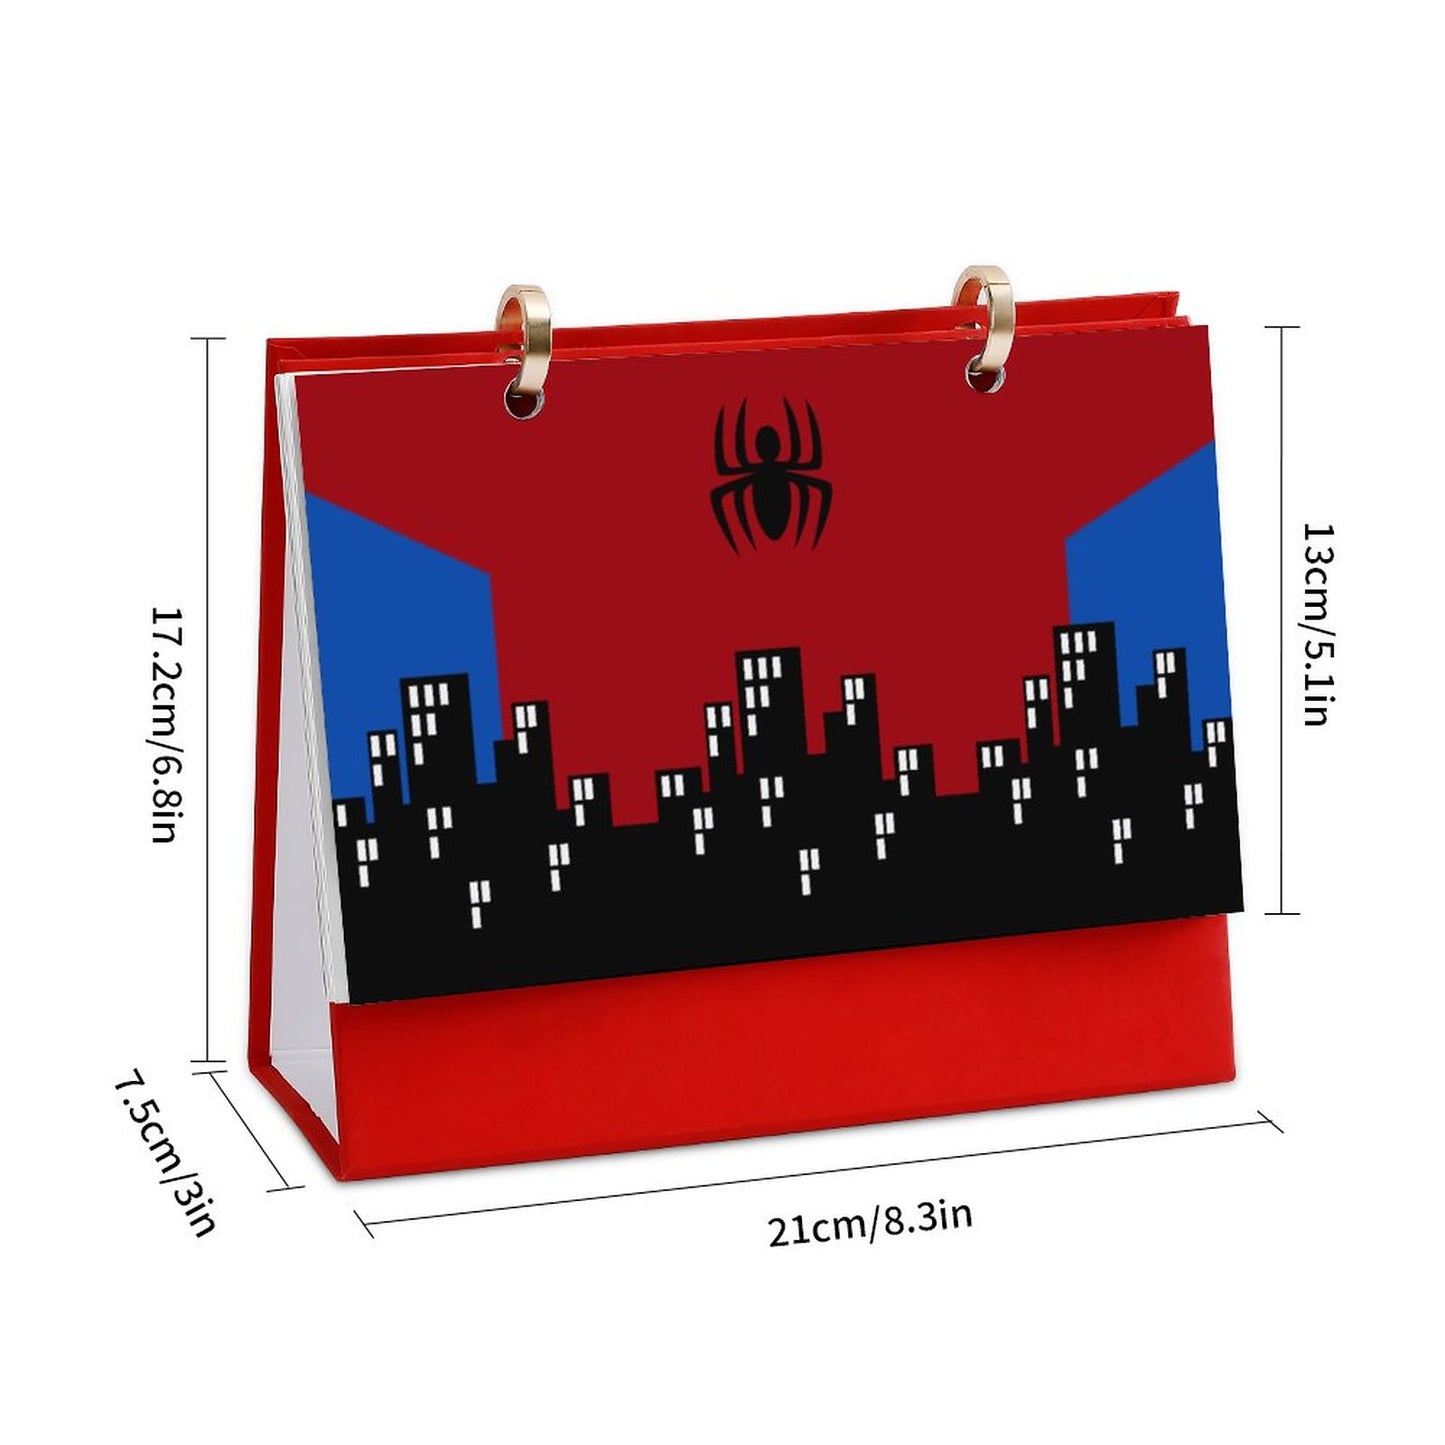 Online DIY Desk Calendar Comics Heroes Spiders One Size